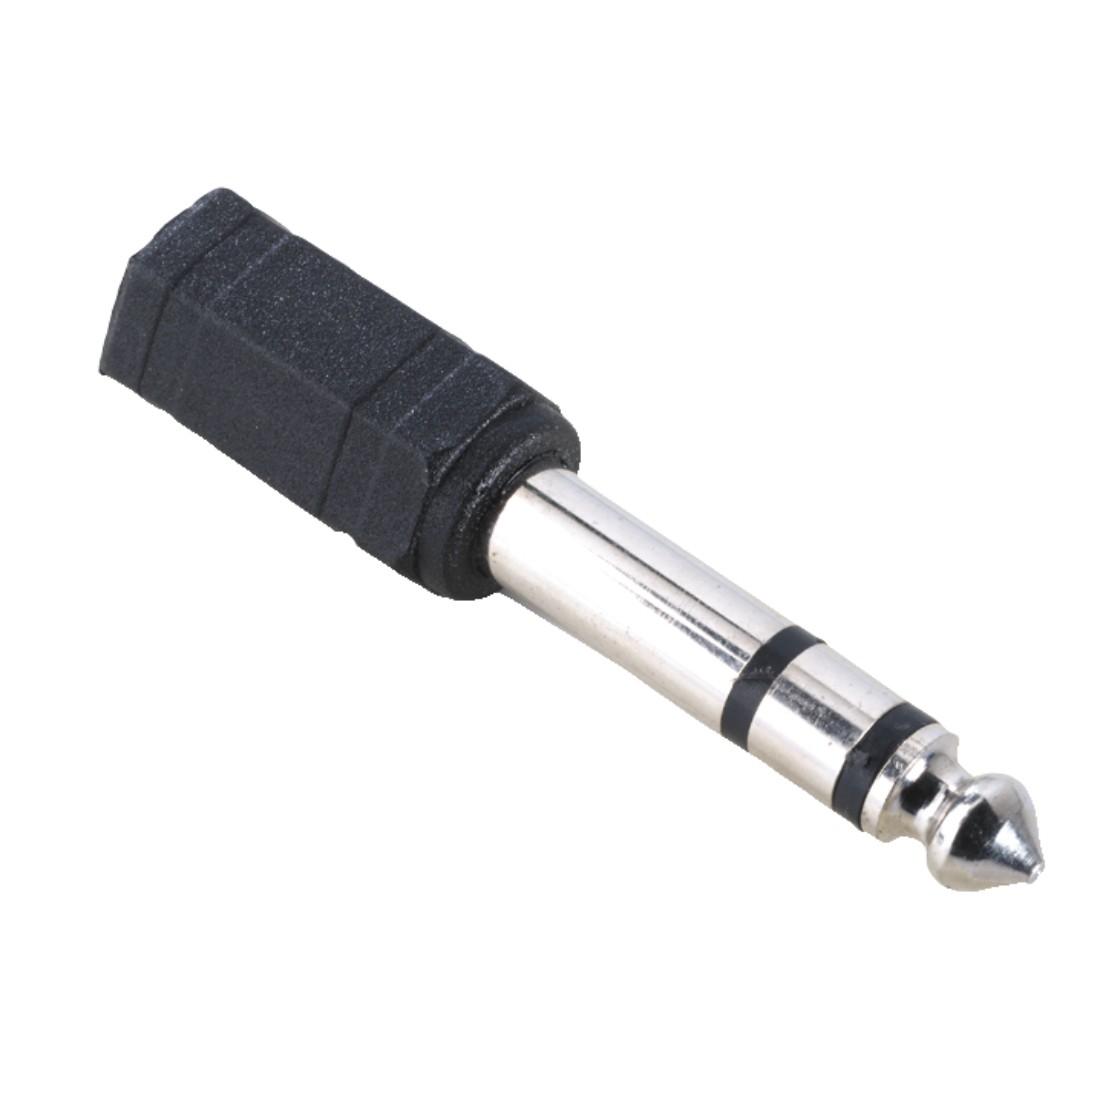 Hama 3.5 mm – 6.3 mm jack plug, Audio Adapter,